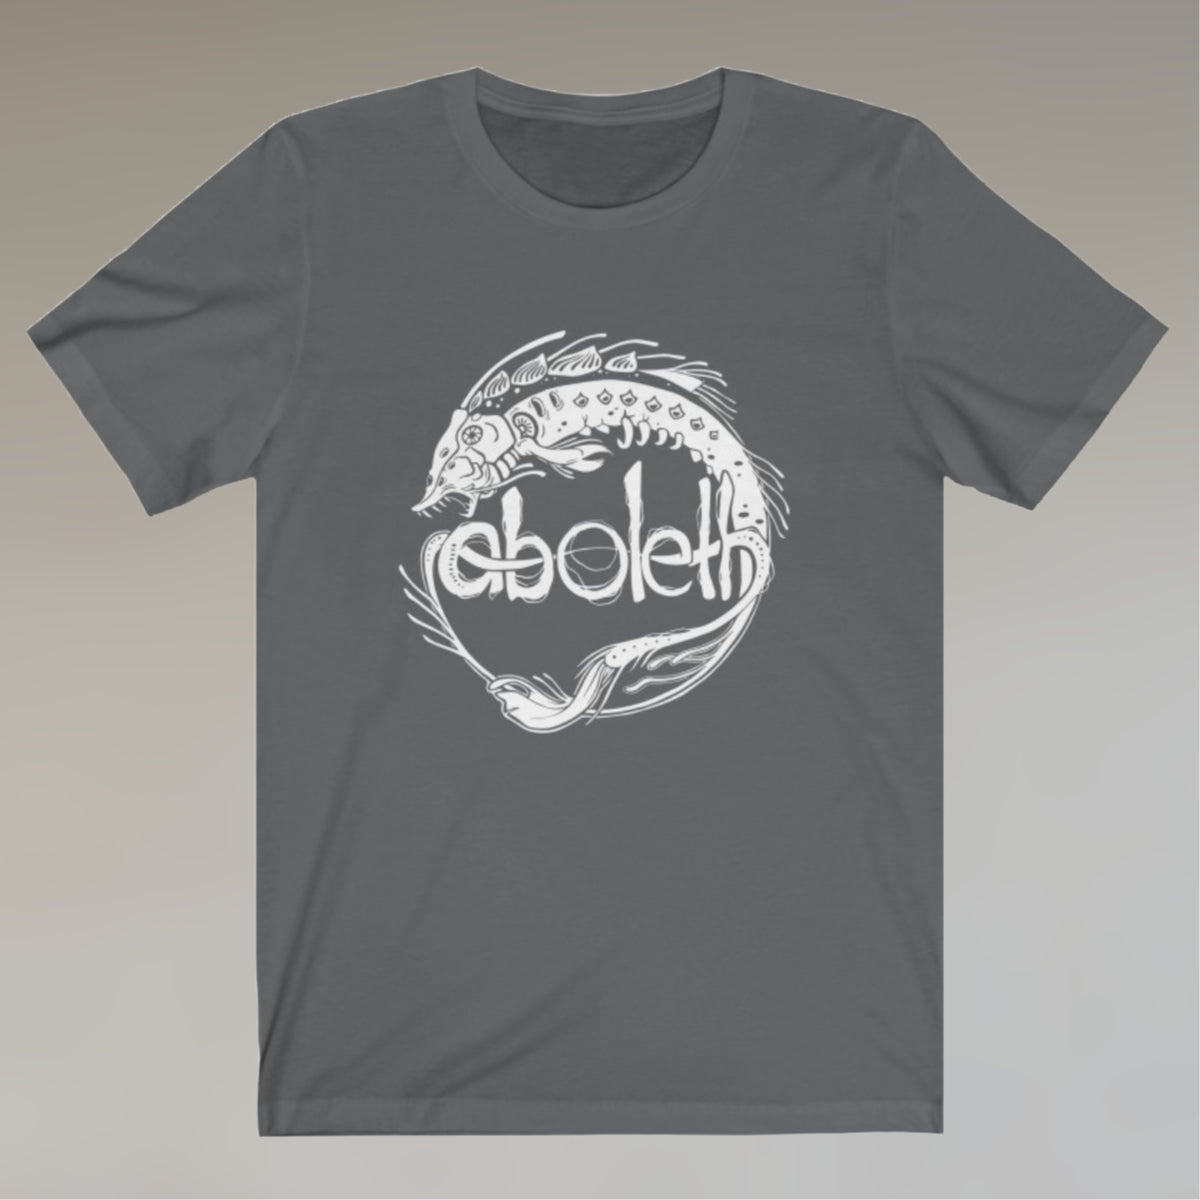 Aboleth - Unisex T-Shirt